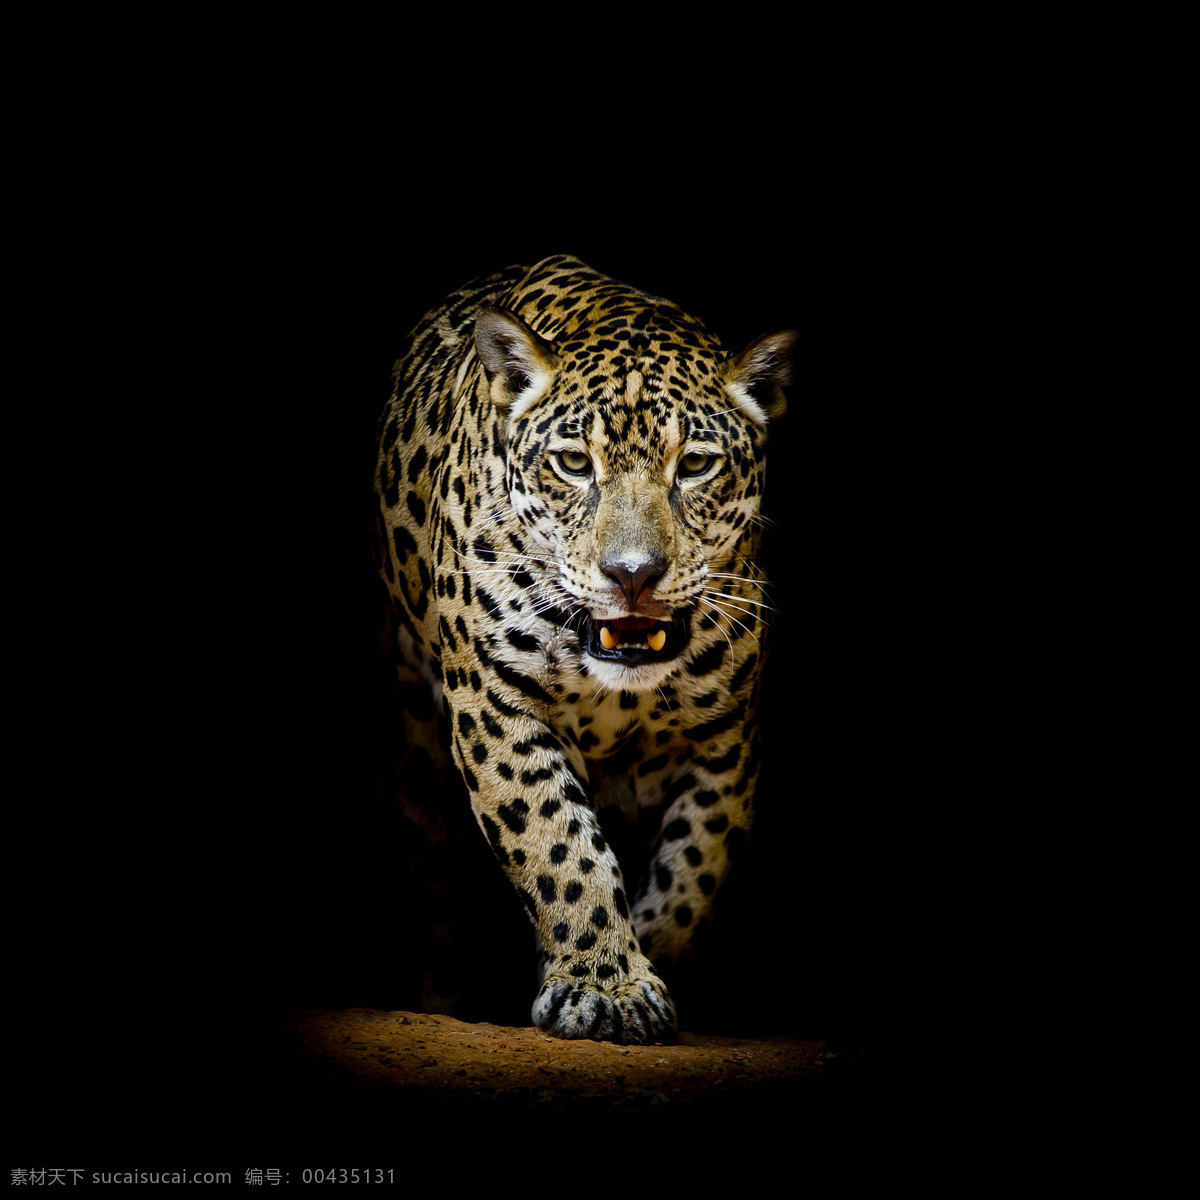 美洲豹图片 美洲豹 宁波 雅戈尔 动物园 猛兽 猞猁 插图 猫 脸 动物 野生 生物世界 野生动物